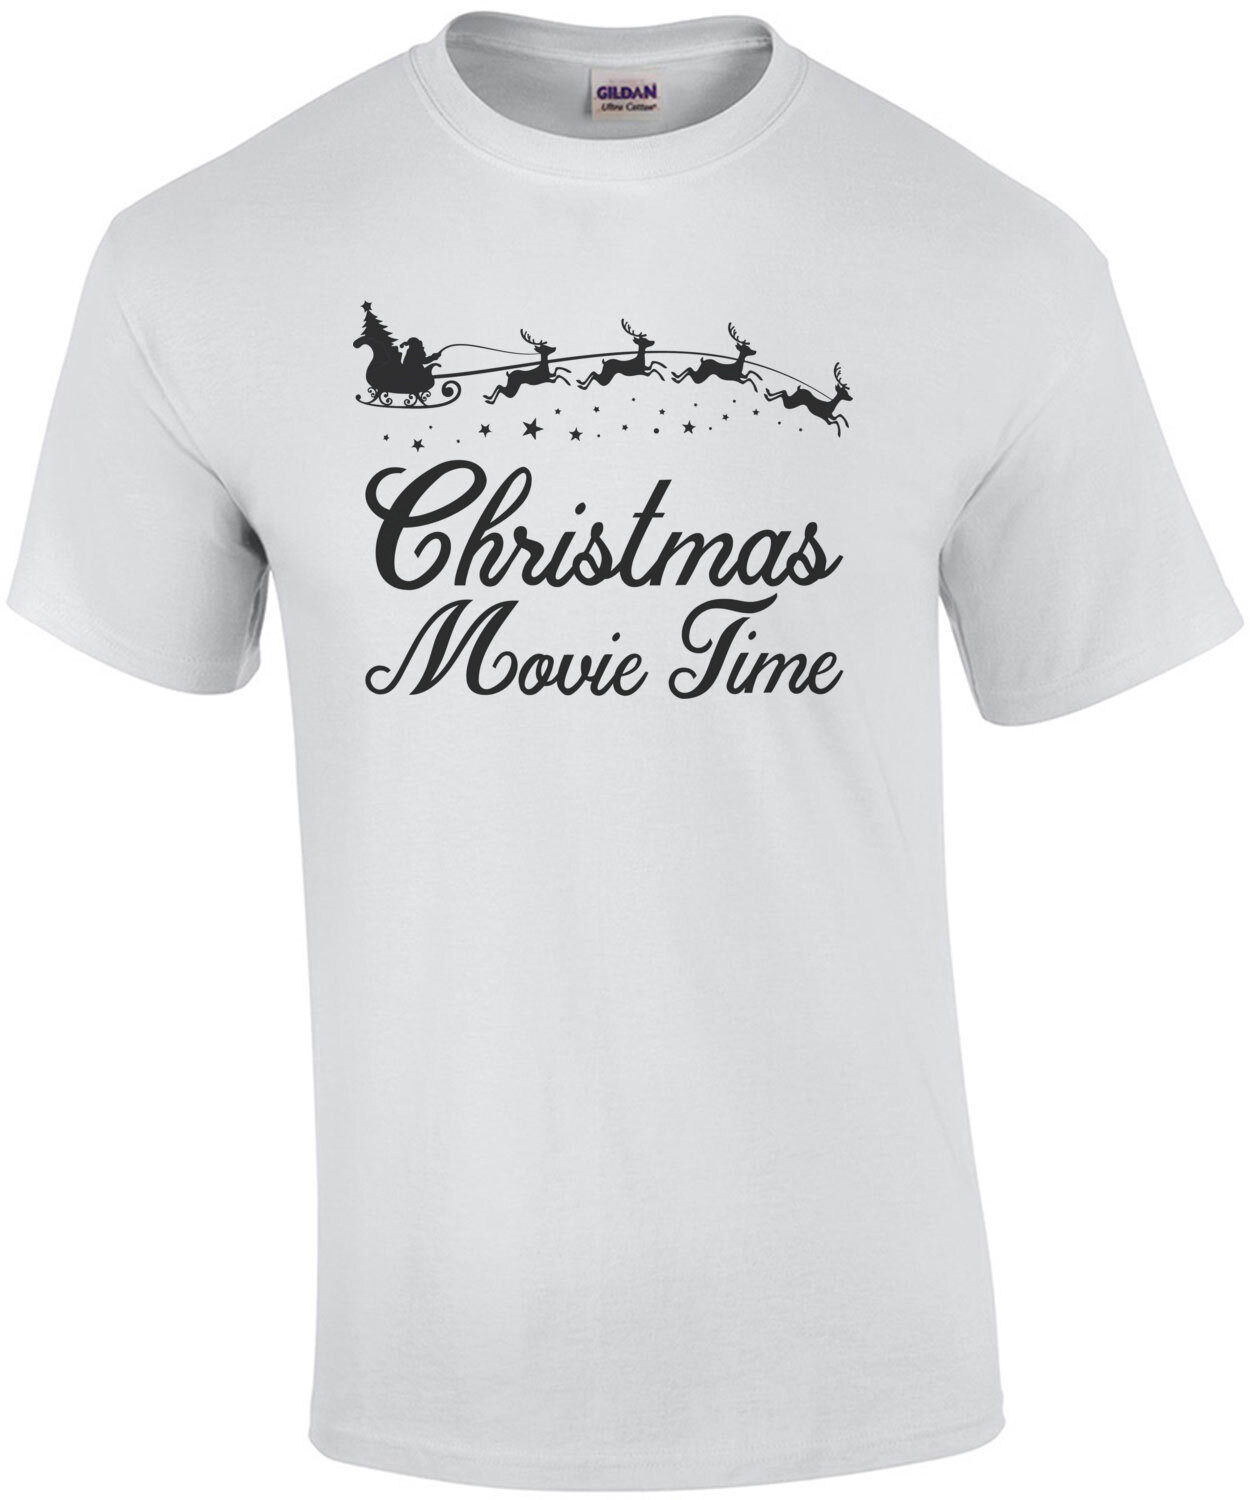 Christmas Movie Time - Funny Christmas T-Shirt